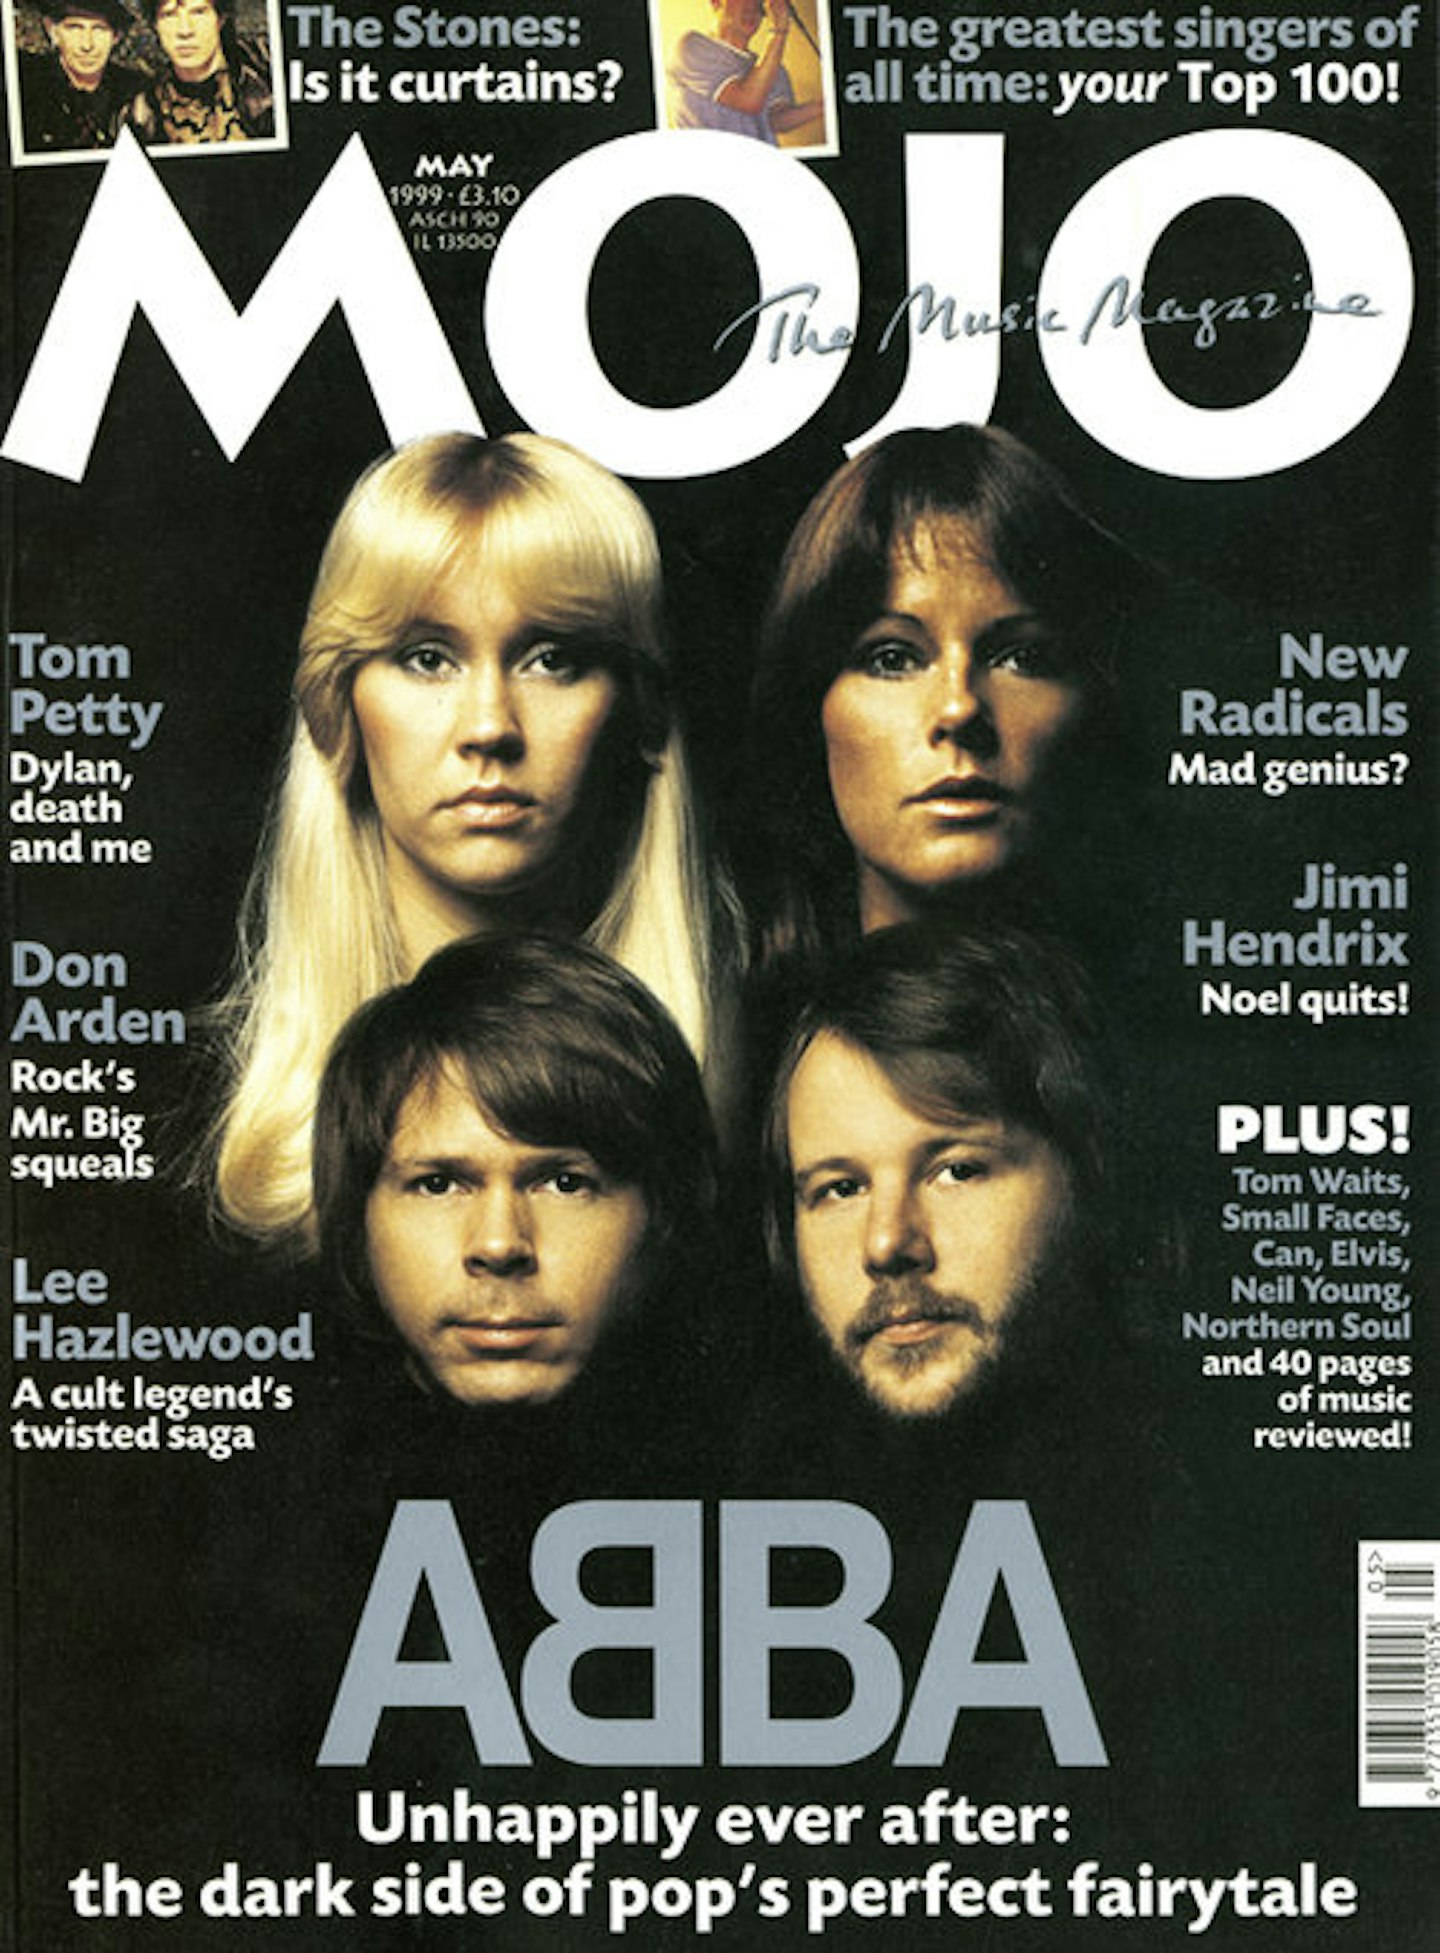 MOJO Issue 66 / May 1999